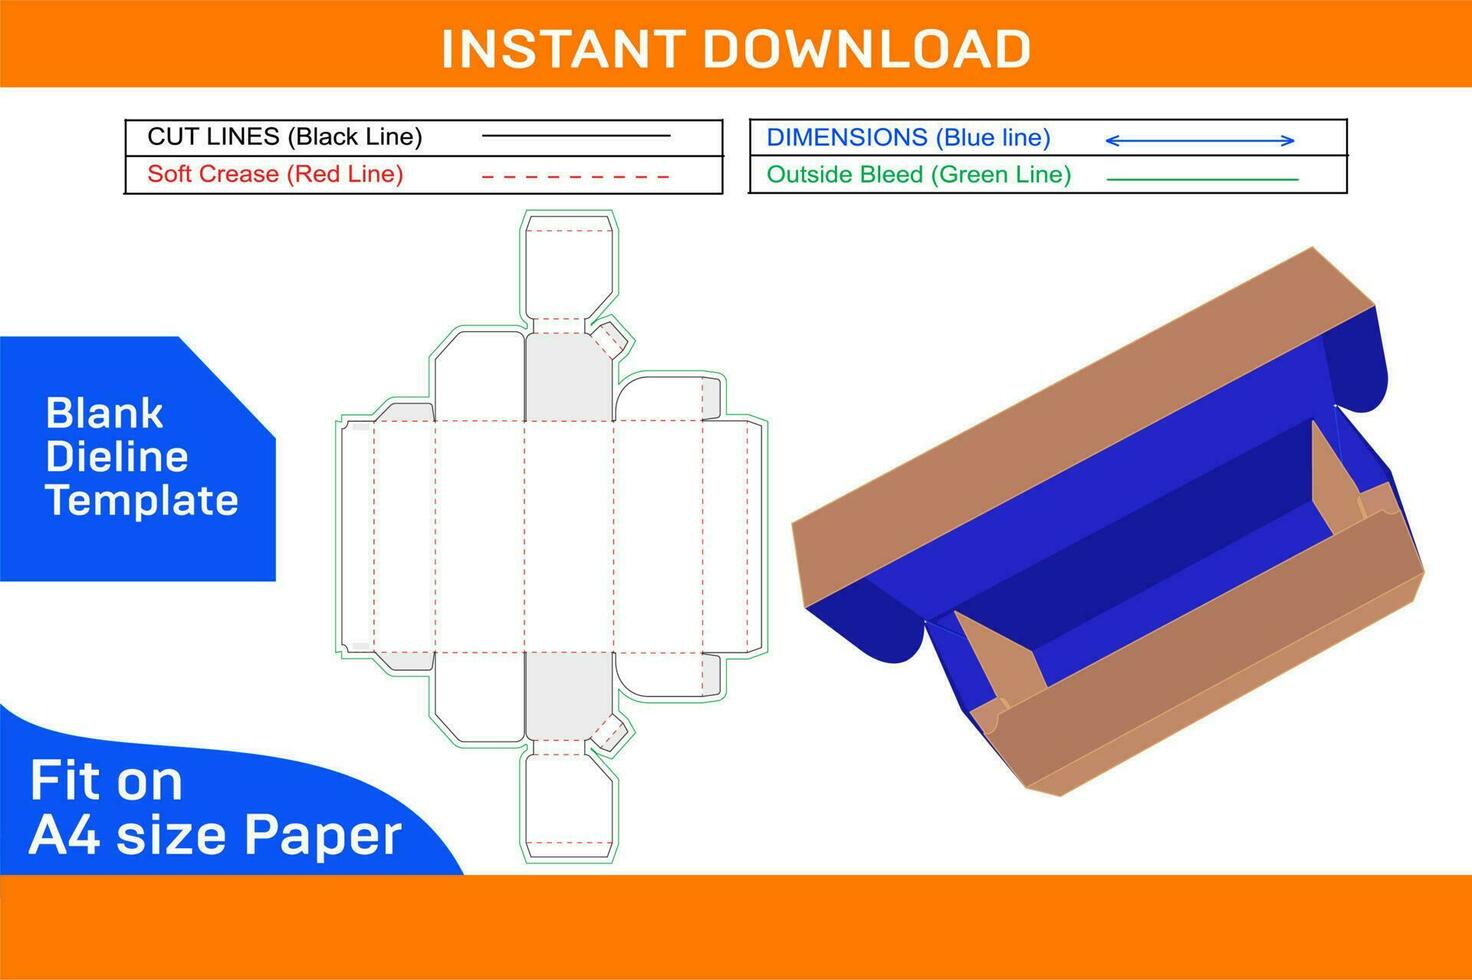 PVC matservering slå in plast filma rulla eller mat förpackning låda Död linje mall och 3d framställa fil tom Död linje mall vektor